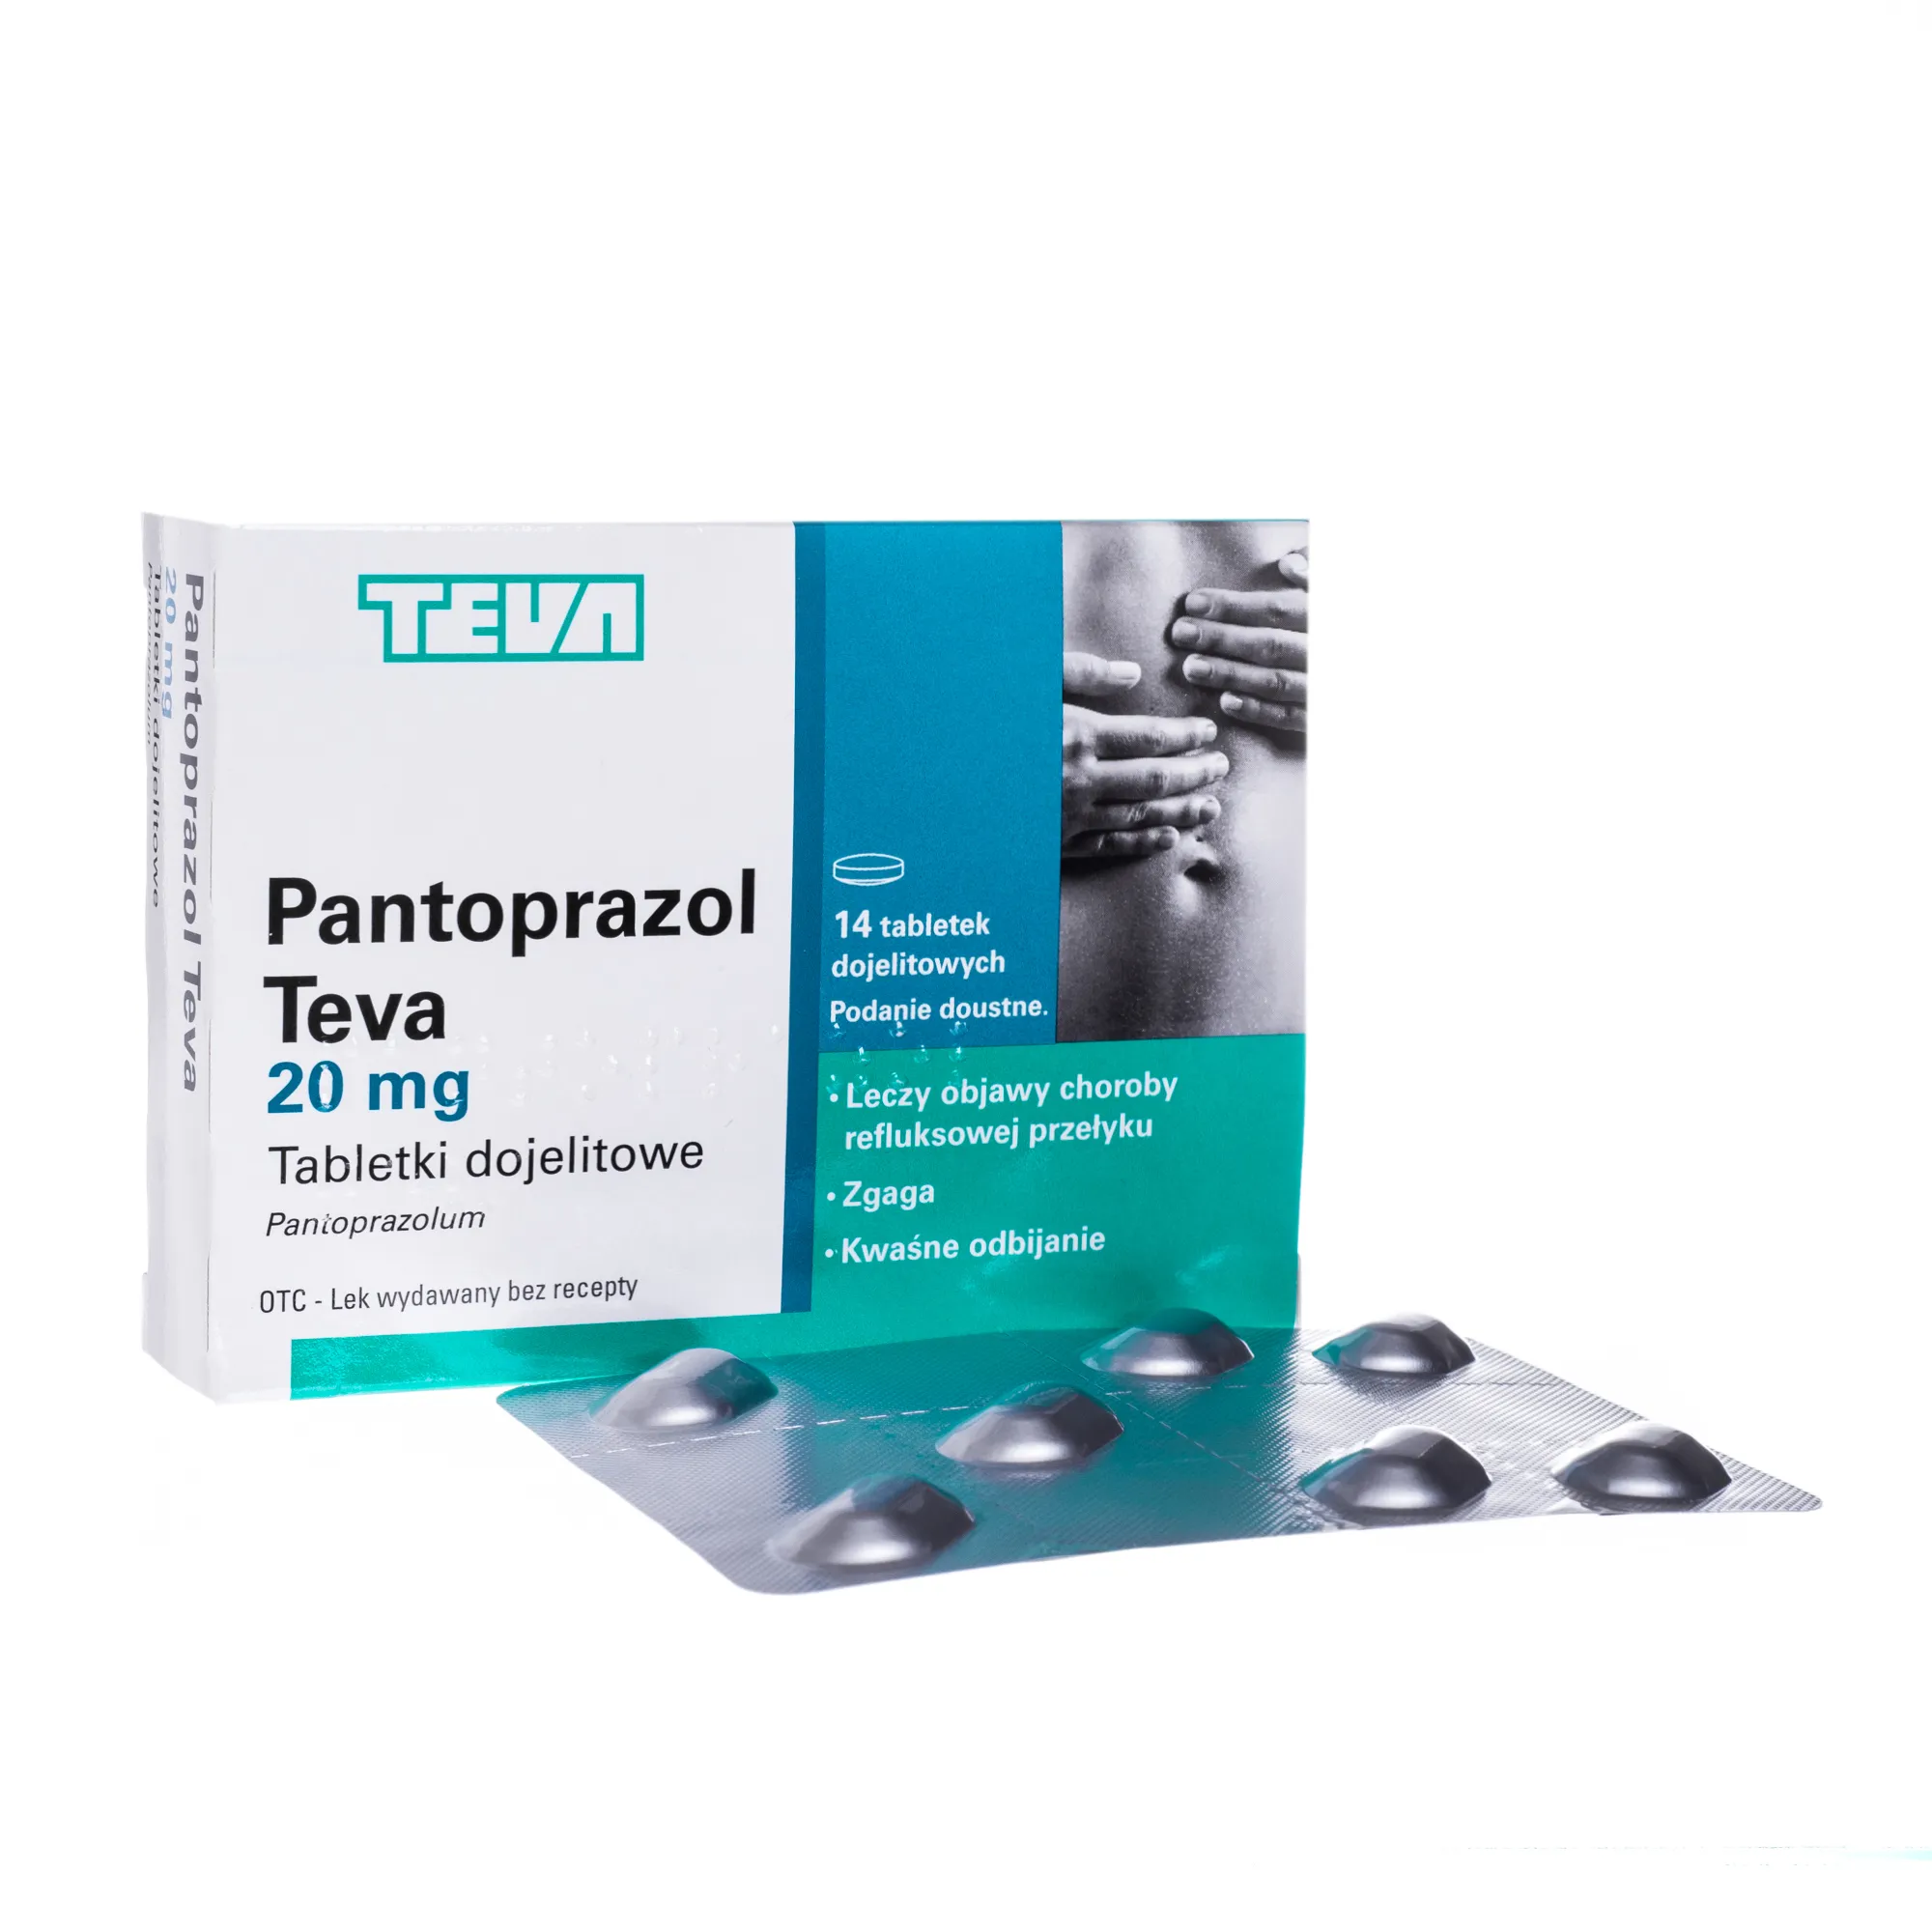 Pantoprazol Teva, 14 tabletek